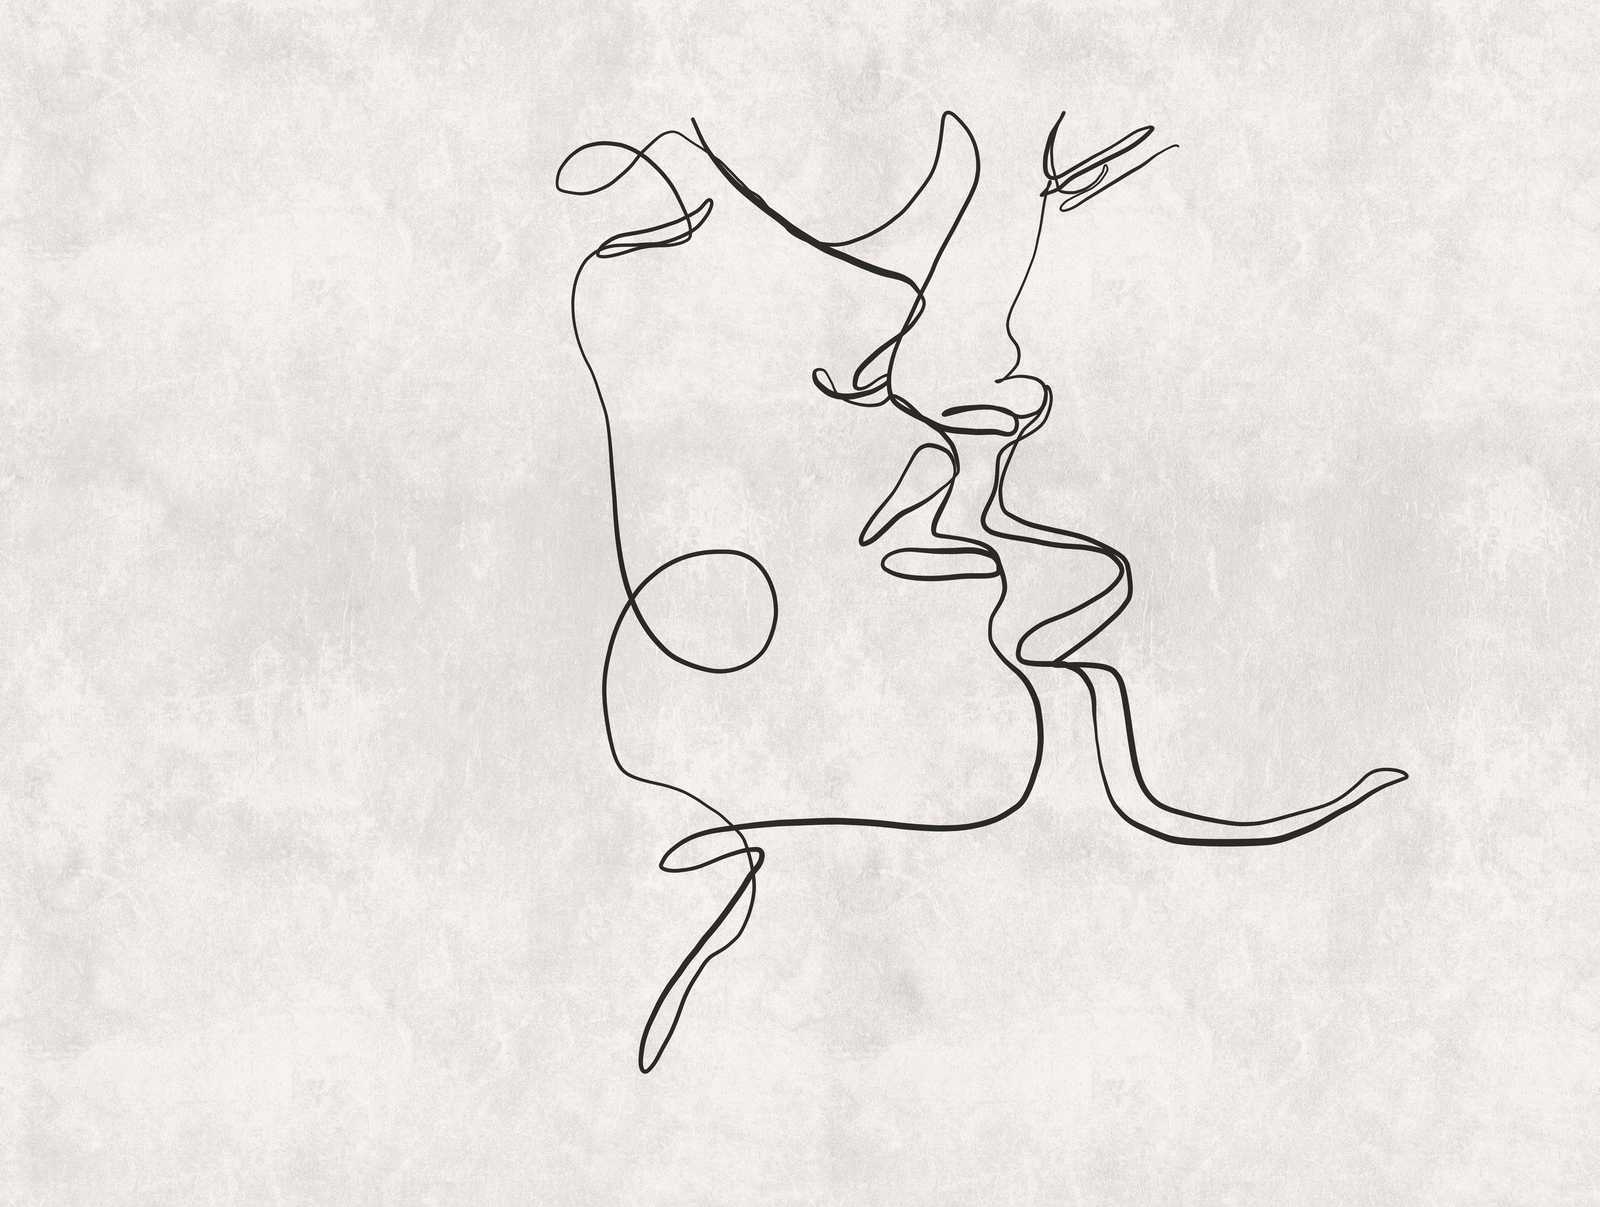             Papel pintado novedad - Papel pintado motivo Line Art beso con aspecto de yeso
        